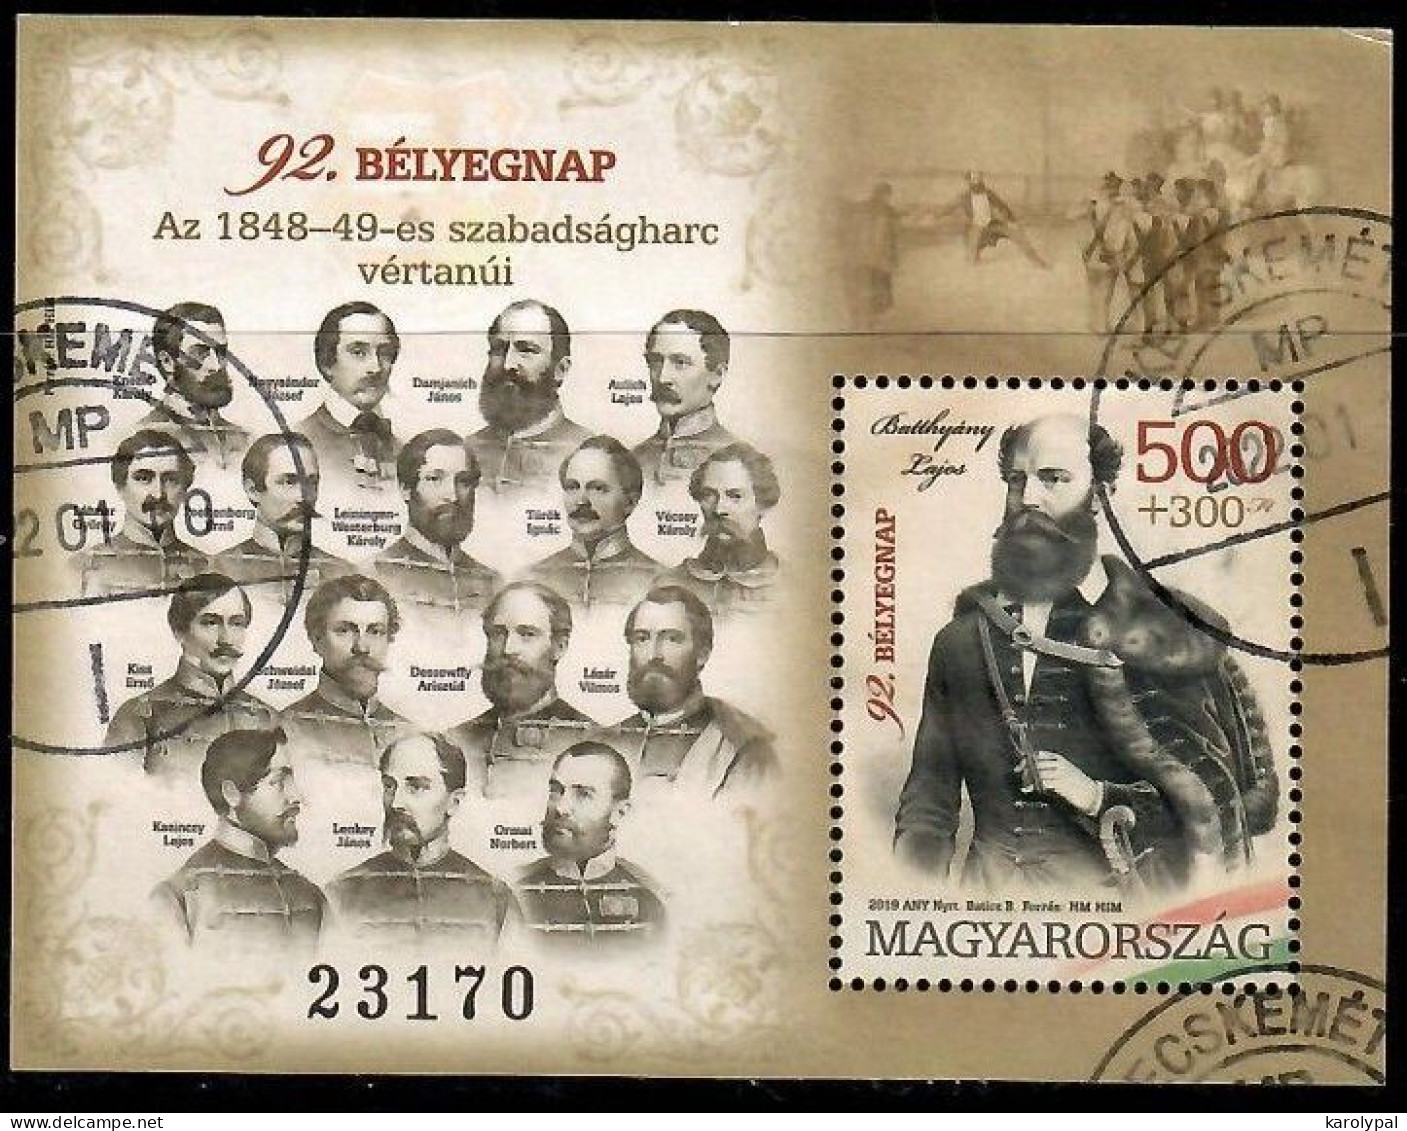 Hungary, 2019, Used, Stamps Day Mi. Nr.bl. 434, - Usado